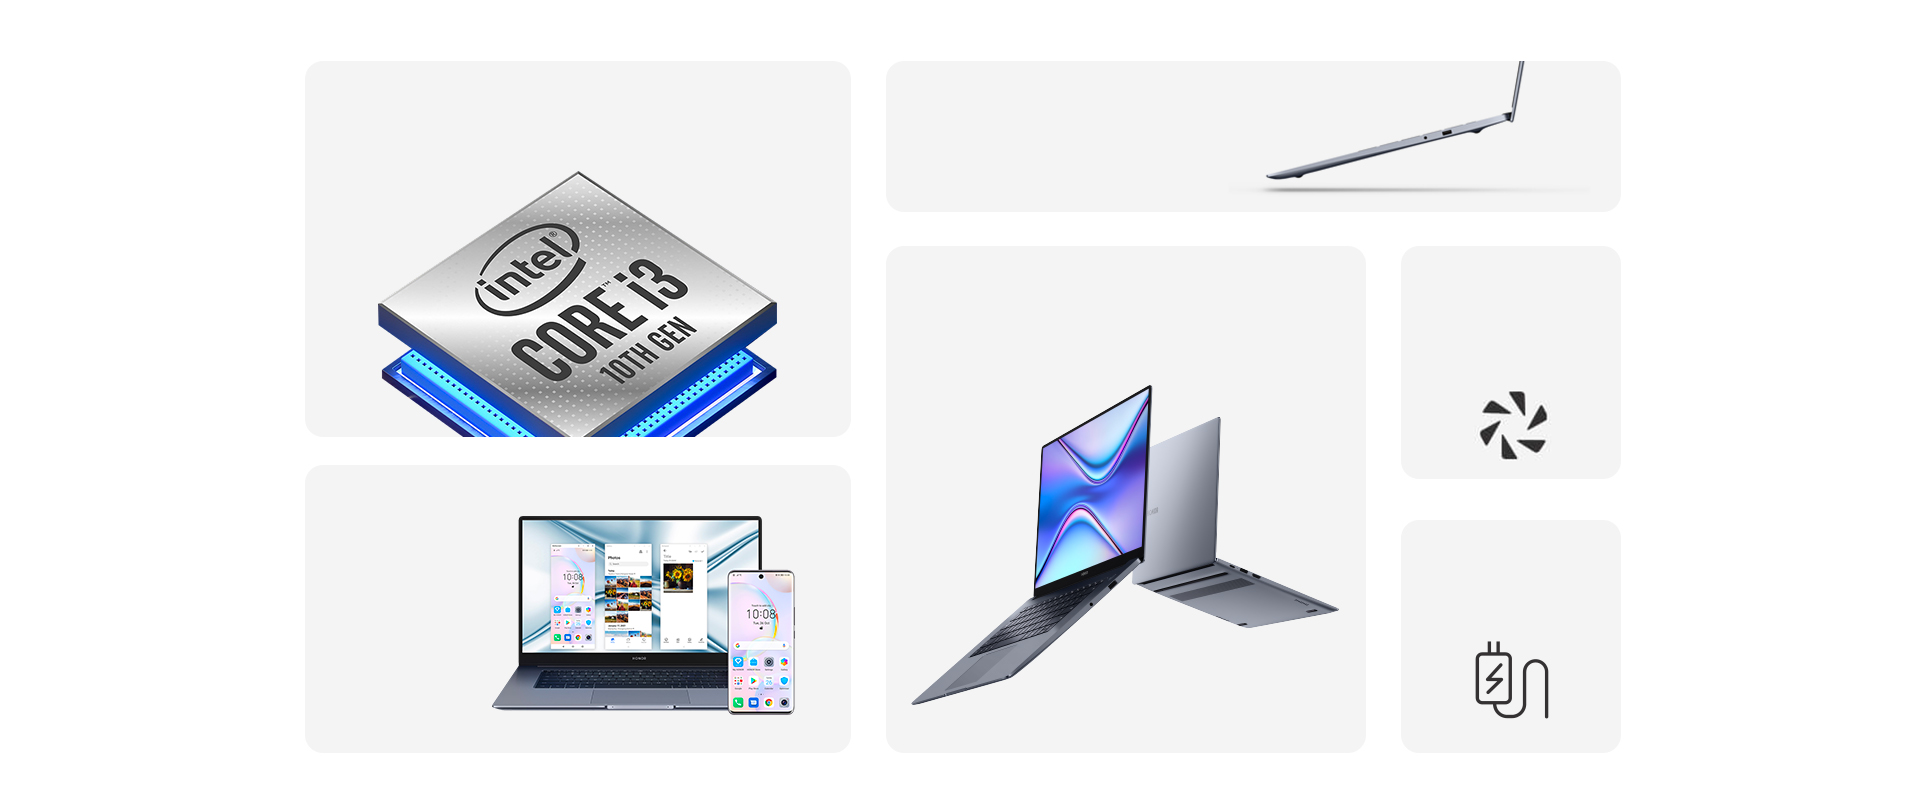 HONOR MagicBook X 15 coming with Premium Aluminum Metal Body Design and Eye Comfort HONOR FullView Display.